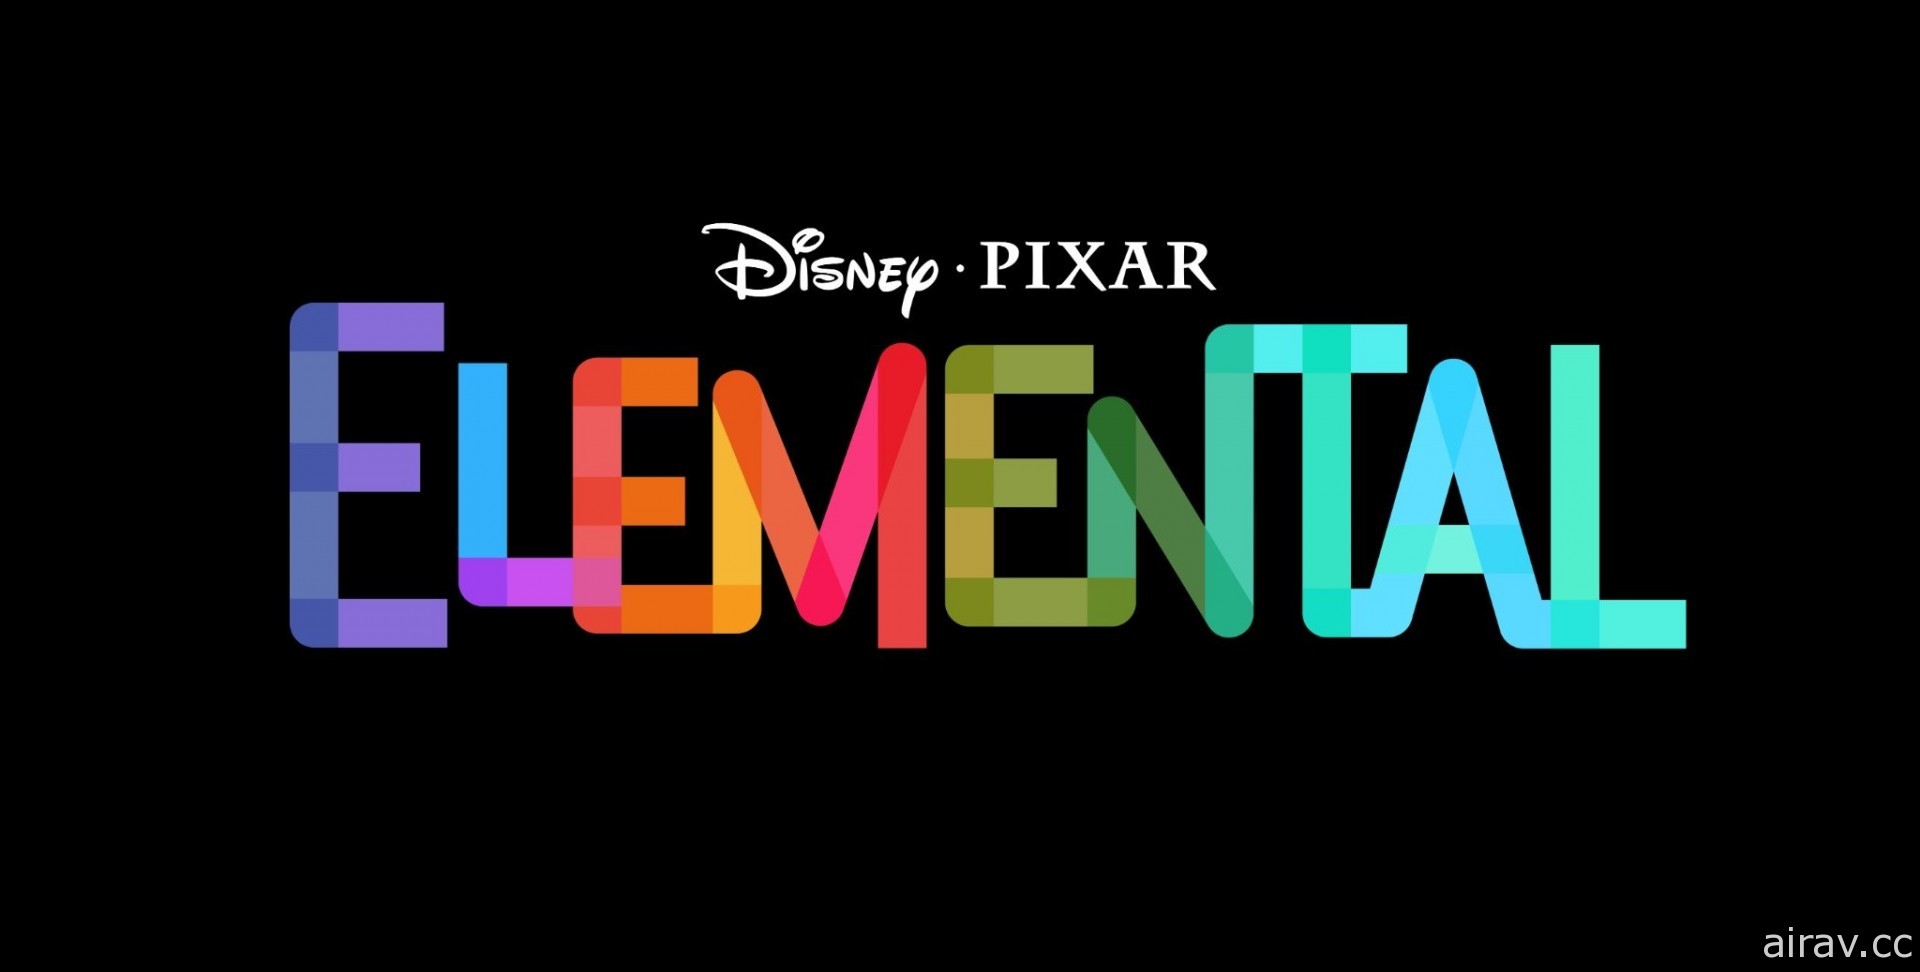 皮克斯動畫新作《Elemental》2023 年 6 月上映 融合各種元素的城市舞台